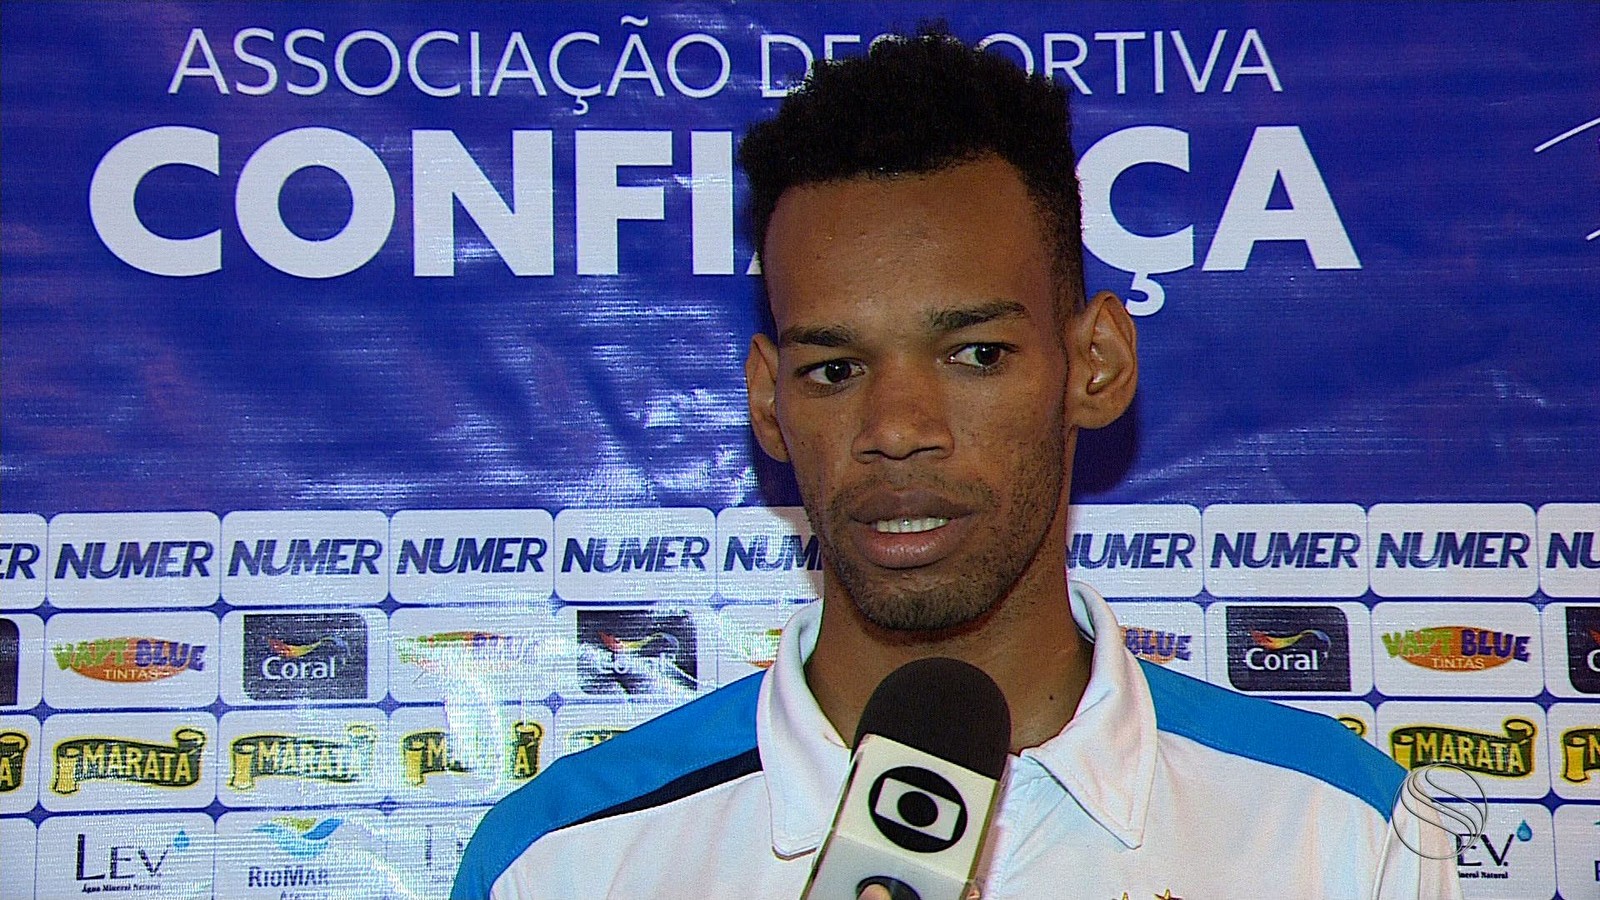 Anderson, zagueiro do Confiança pode assinar com o Grêmio (Foto: José Gilton / TV Sergipe)